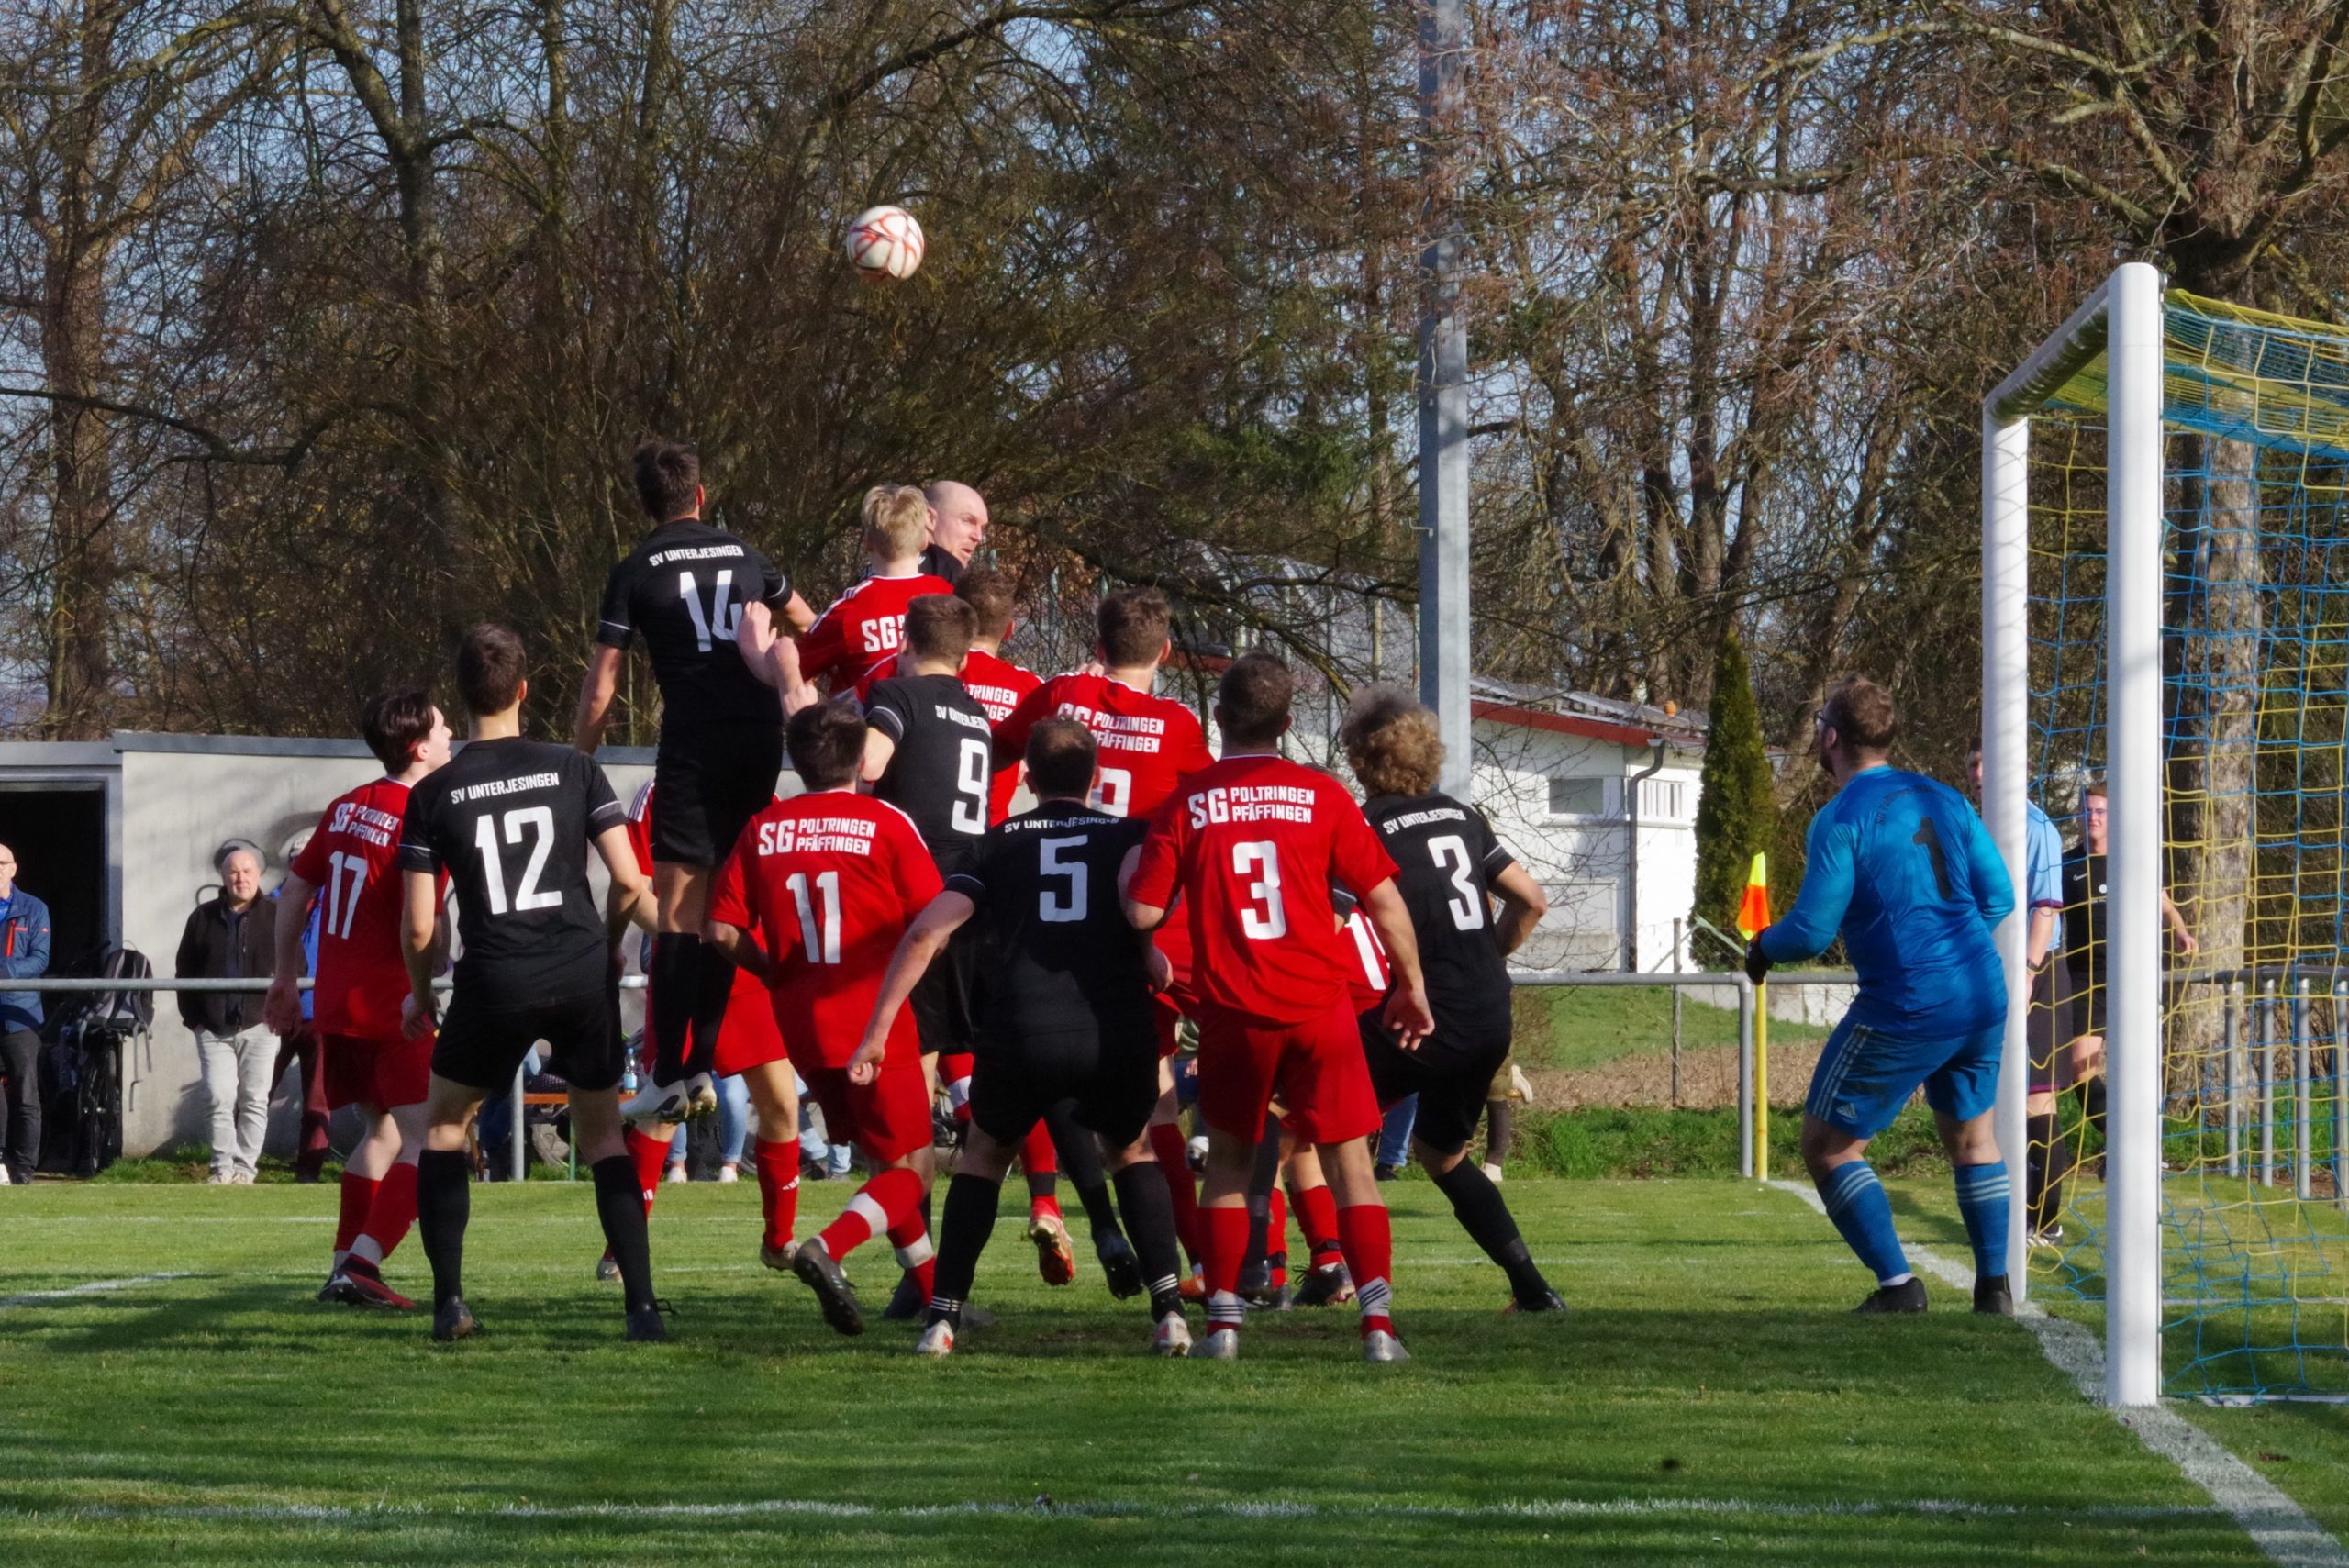 Spielbericht Kreisliga A3 – 19. Spieltag: Doppelpack von Alex Norz sichert 2:0-Arbeitssieg im Derby